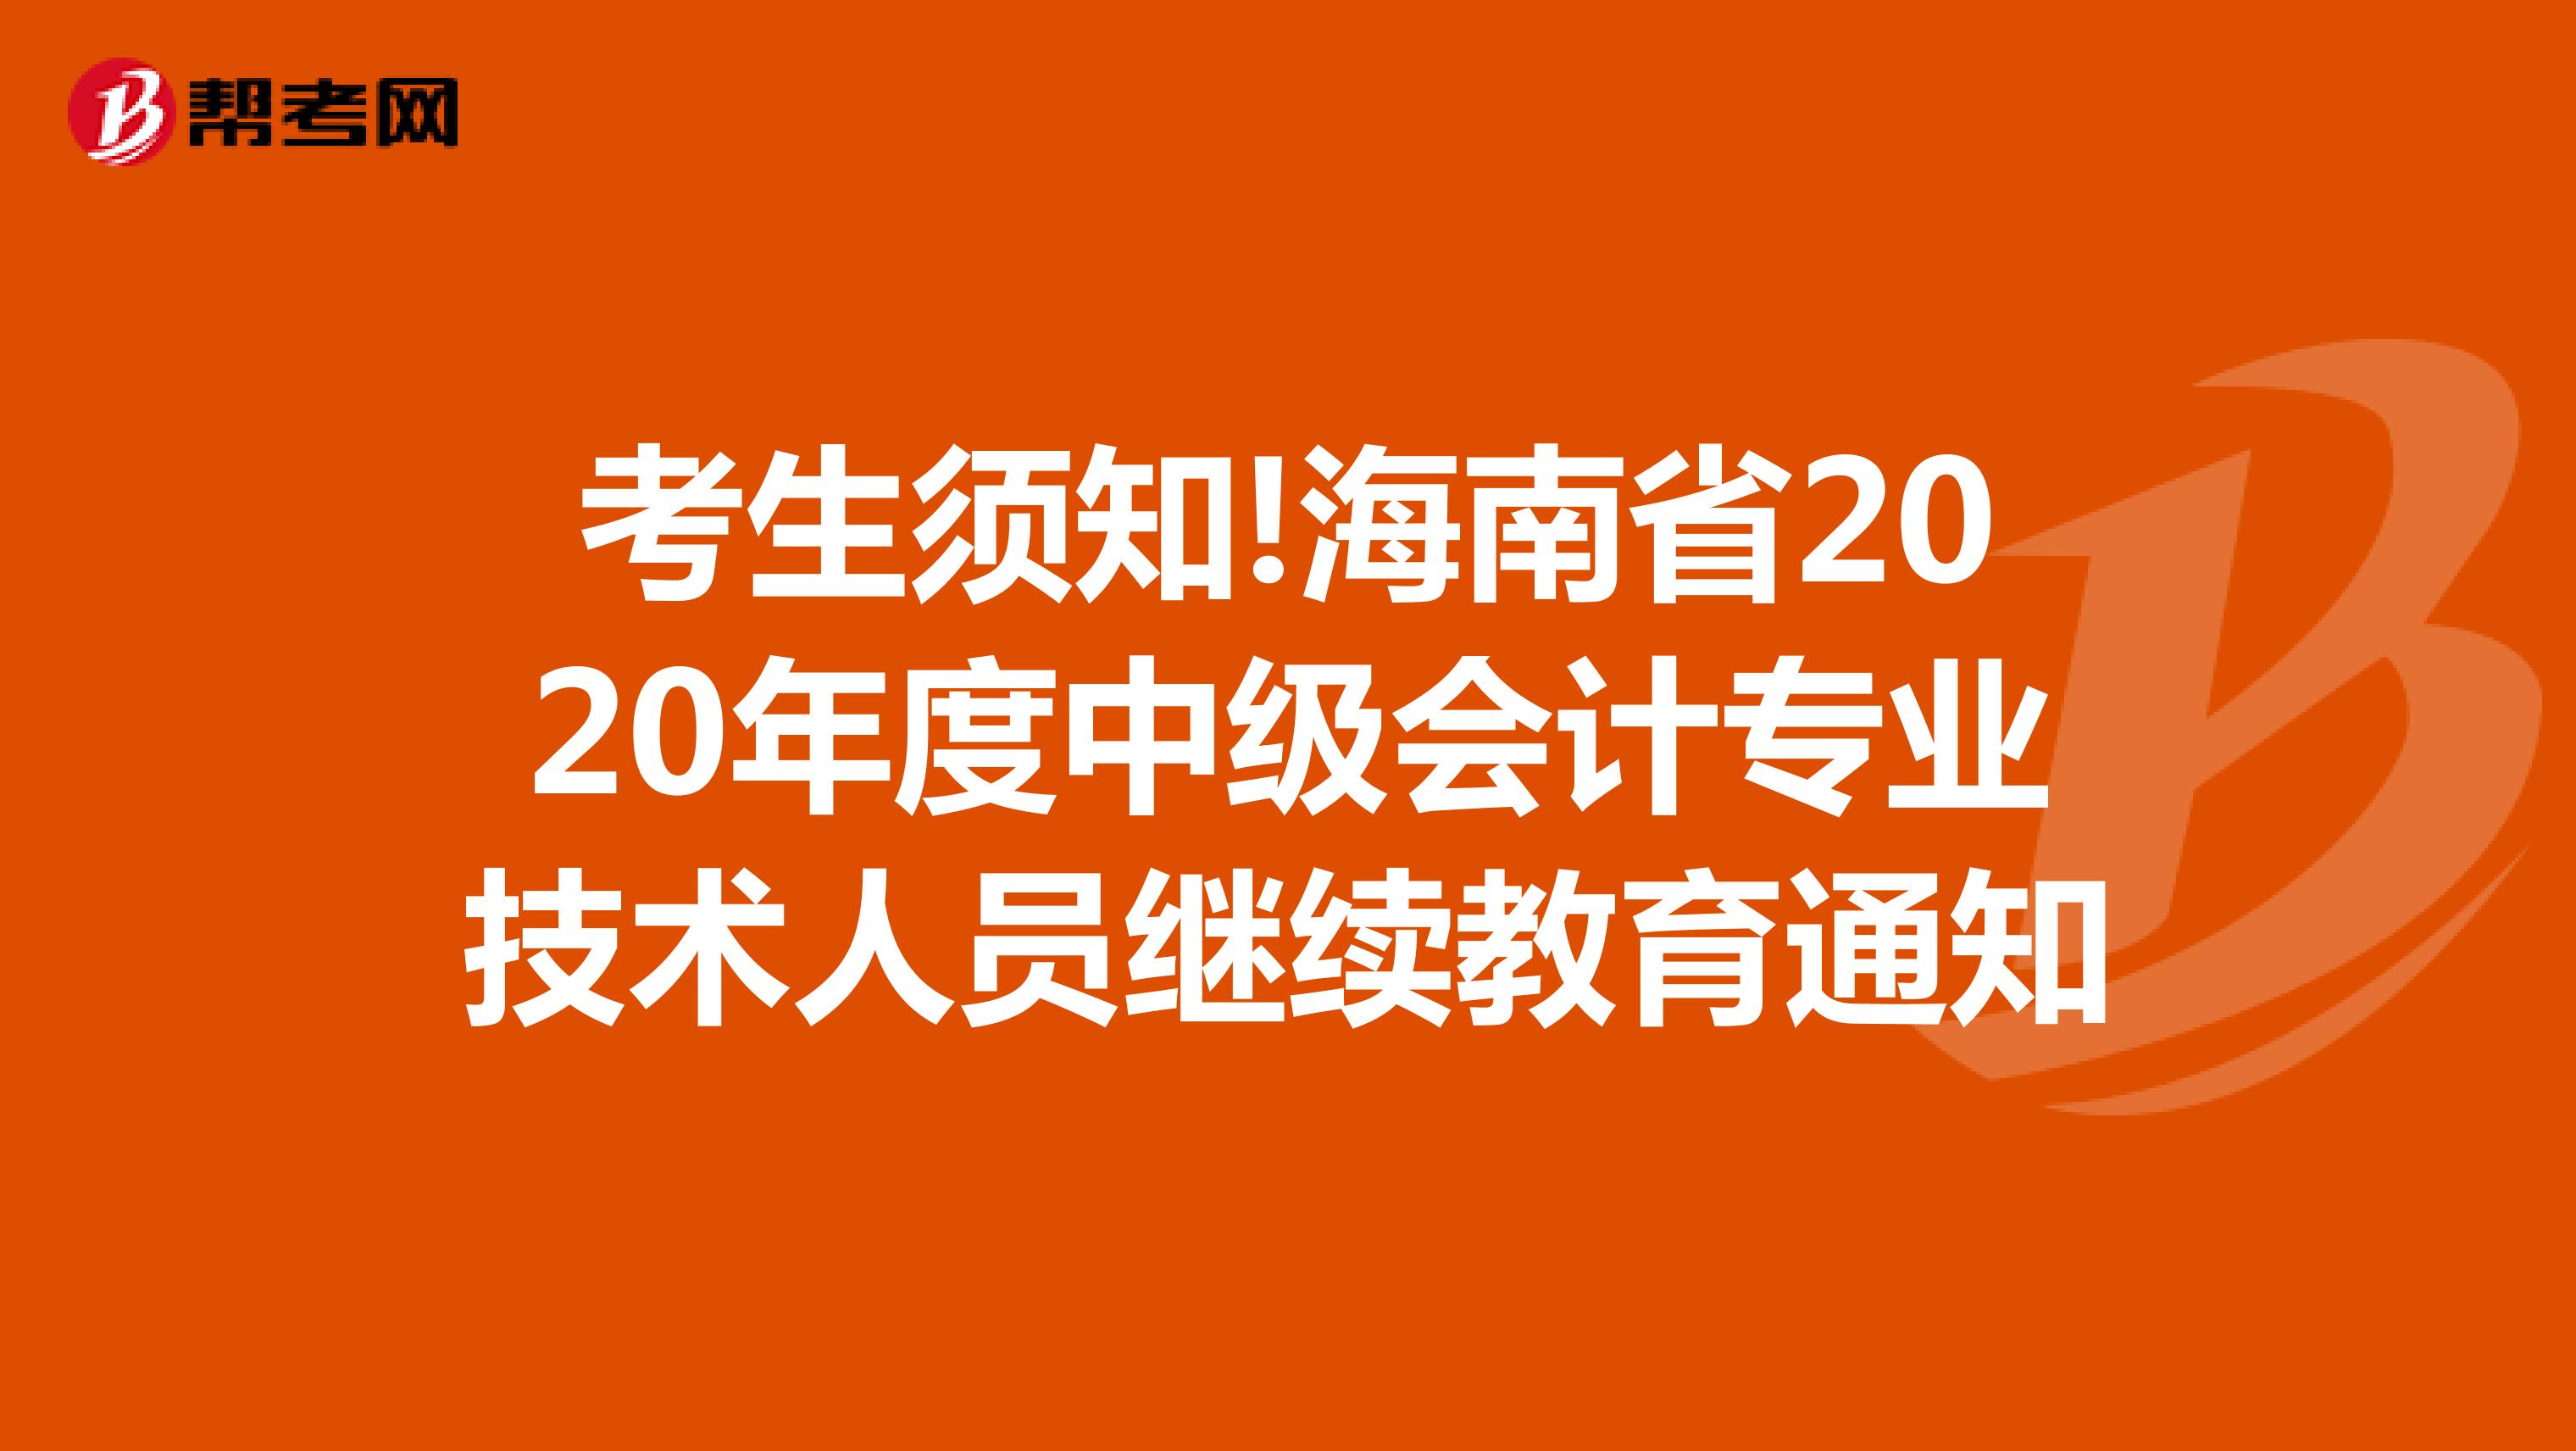 考生须知!海南省2020年度中级会计专业技术人员继续教育通知